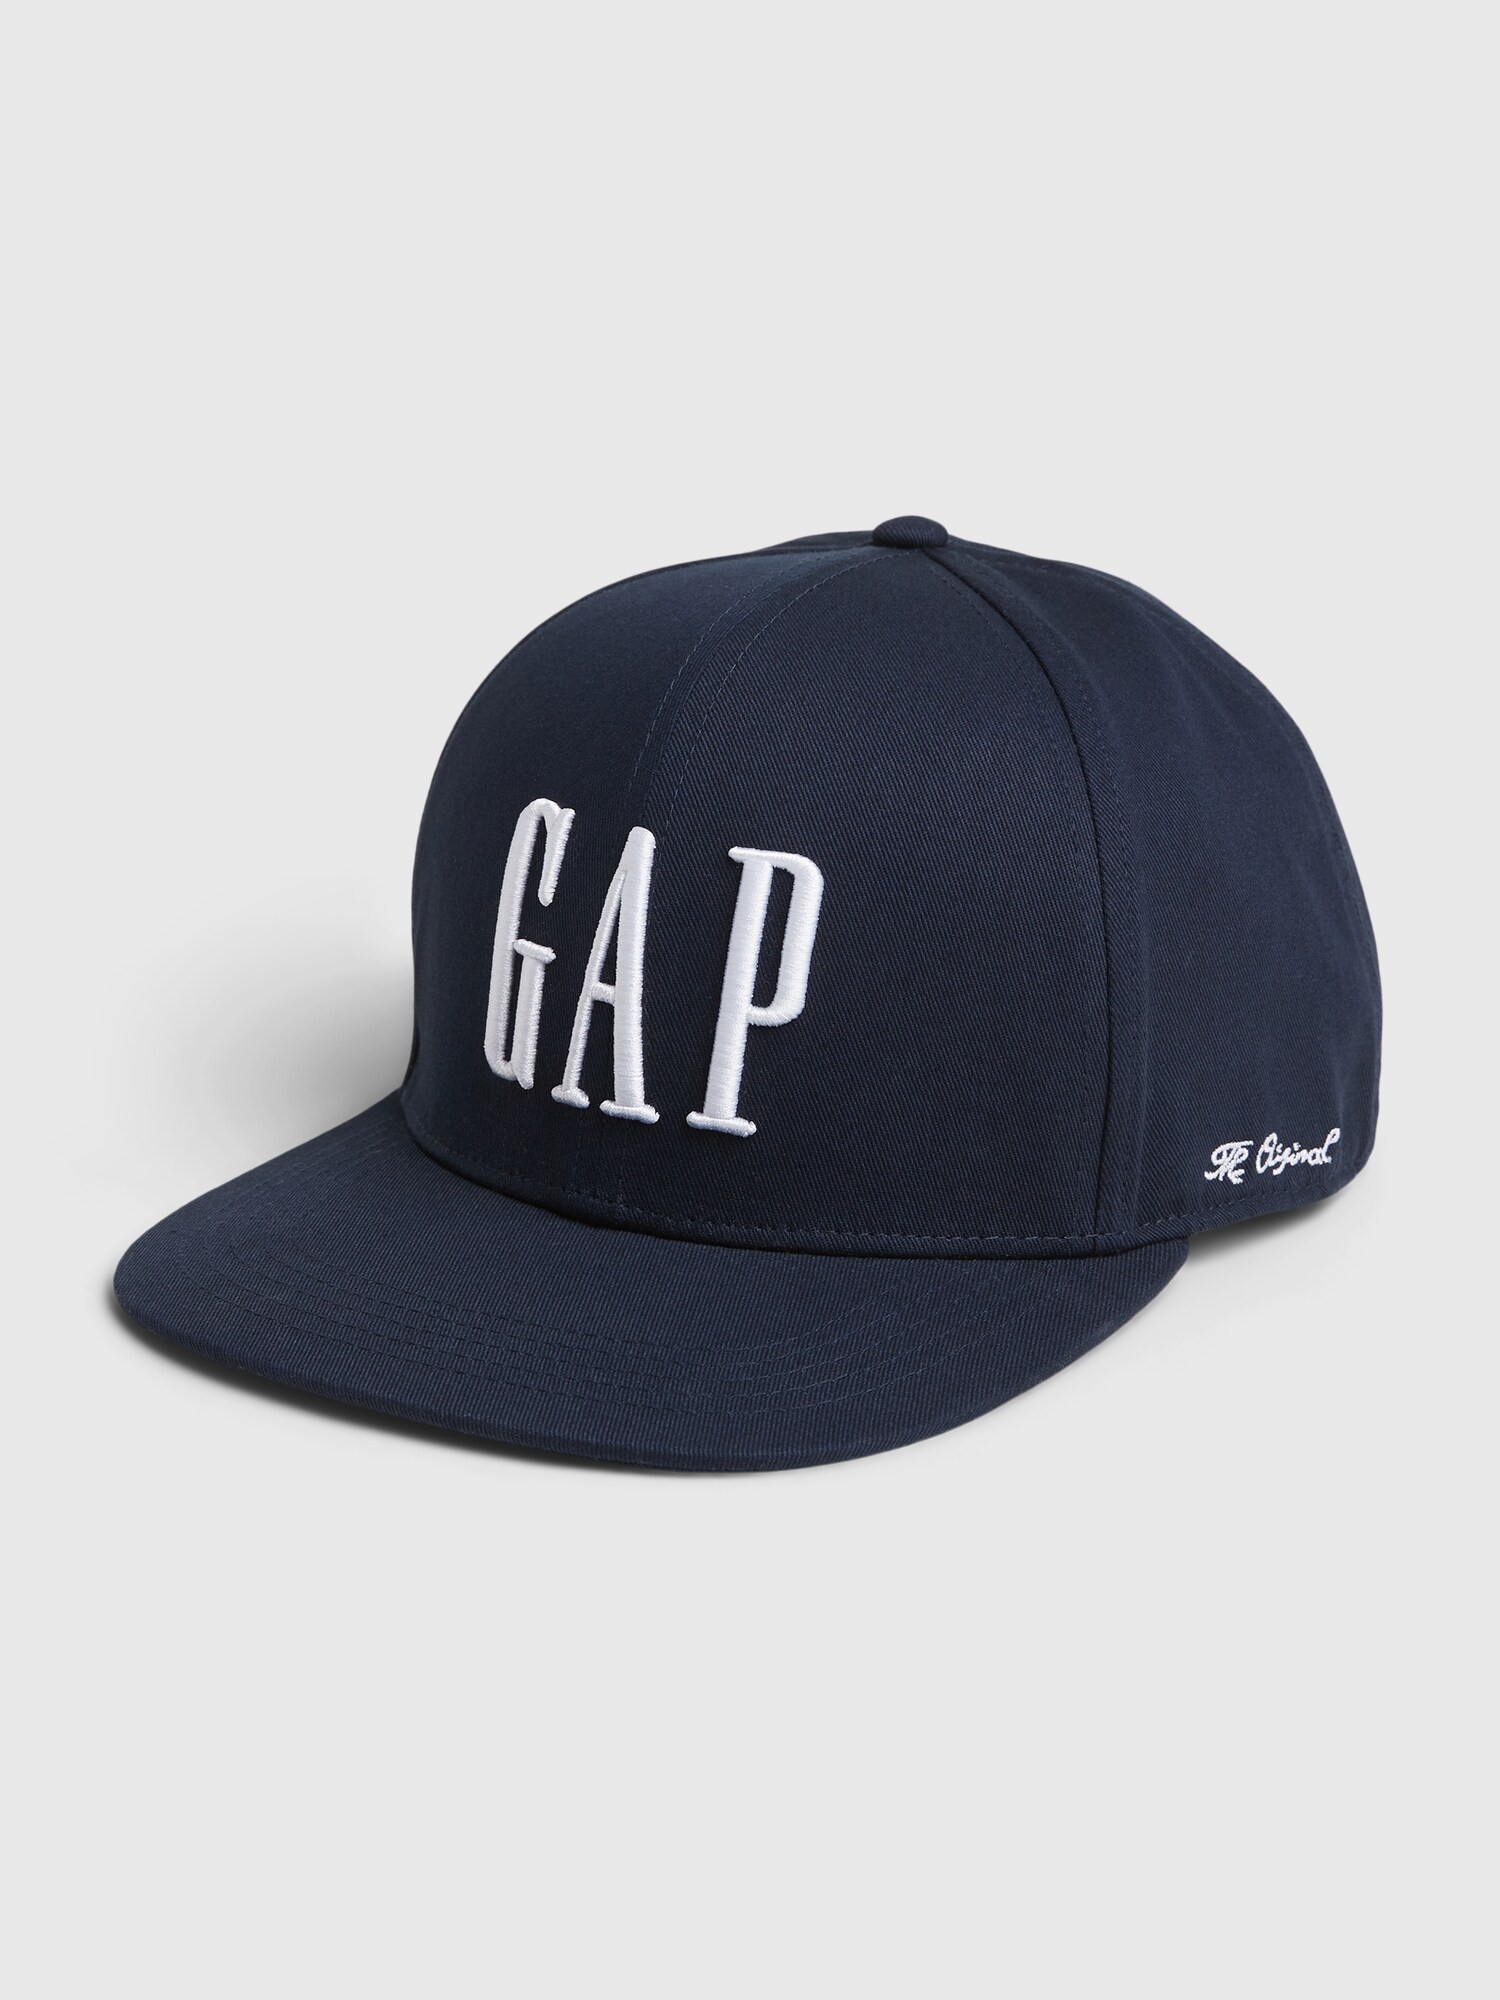 GAP Cap Baseball - Women